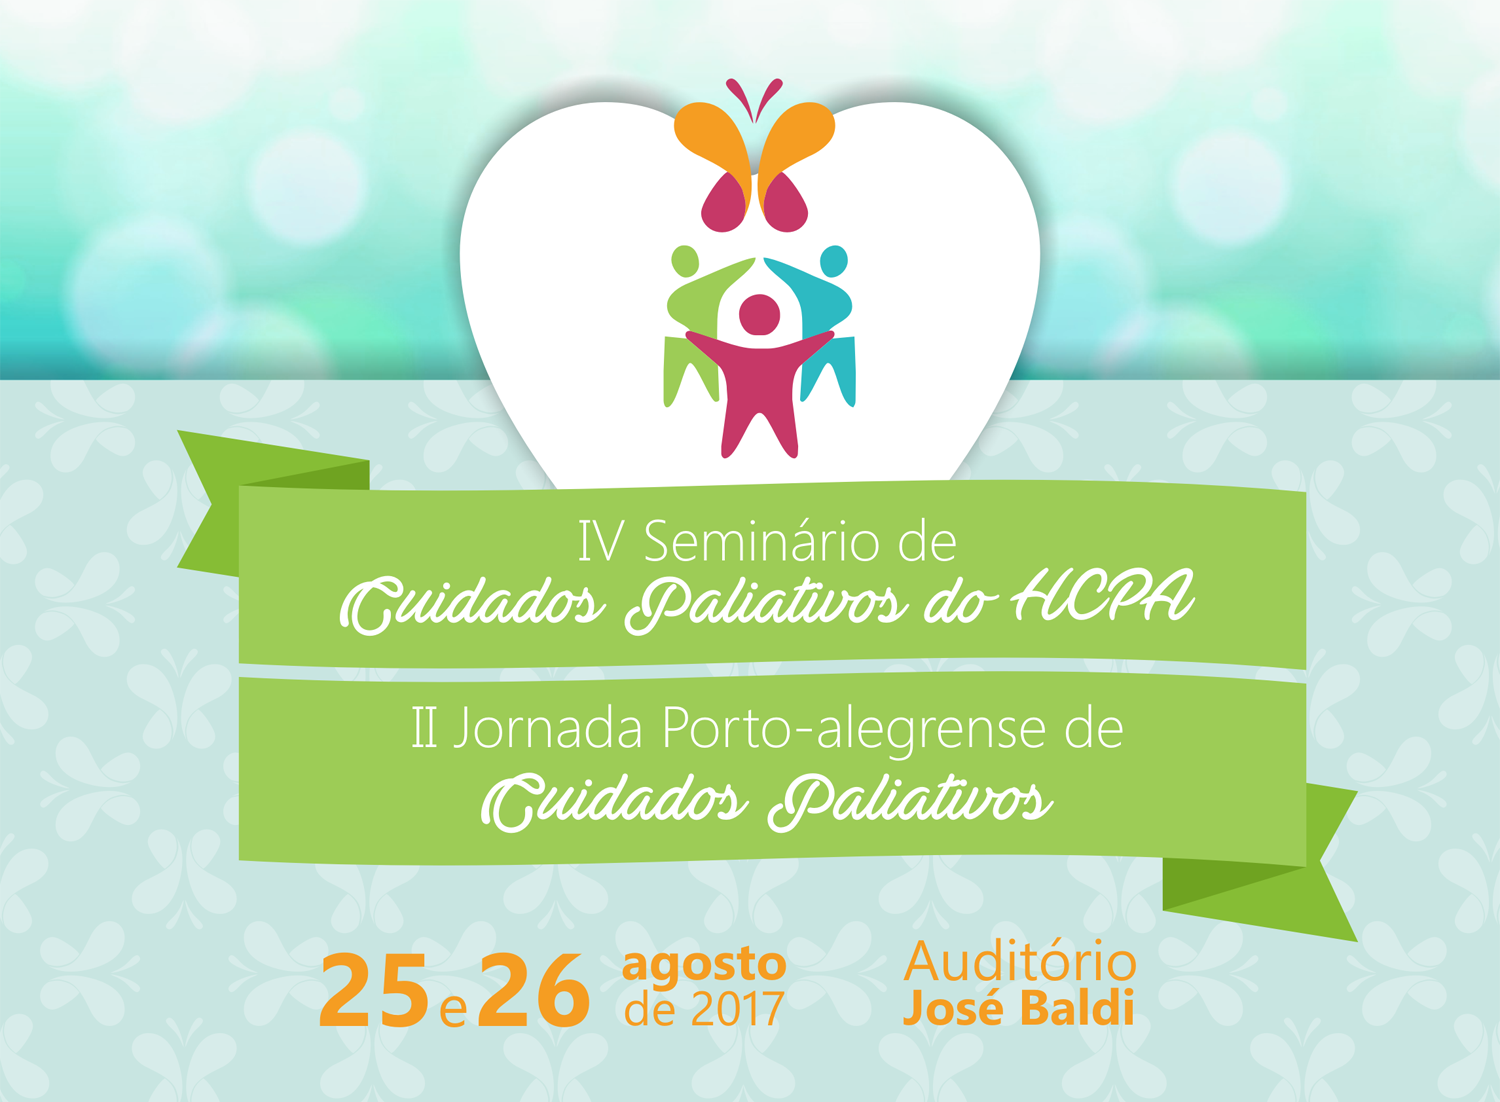 Já estão abertas as inscrições para o IV Seminário de Cuidados Paliativos do HCPA e II Jornada Porto-Alegrense de Cuidados Paliativos